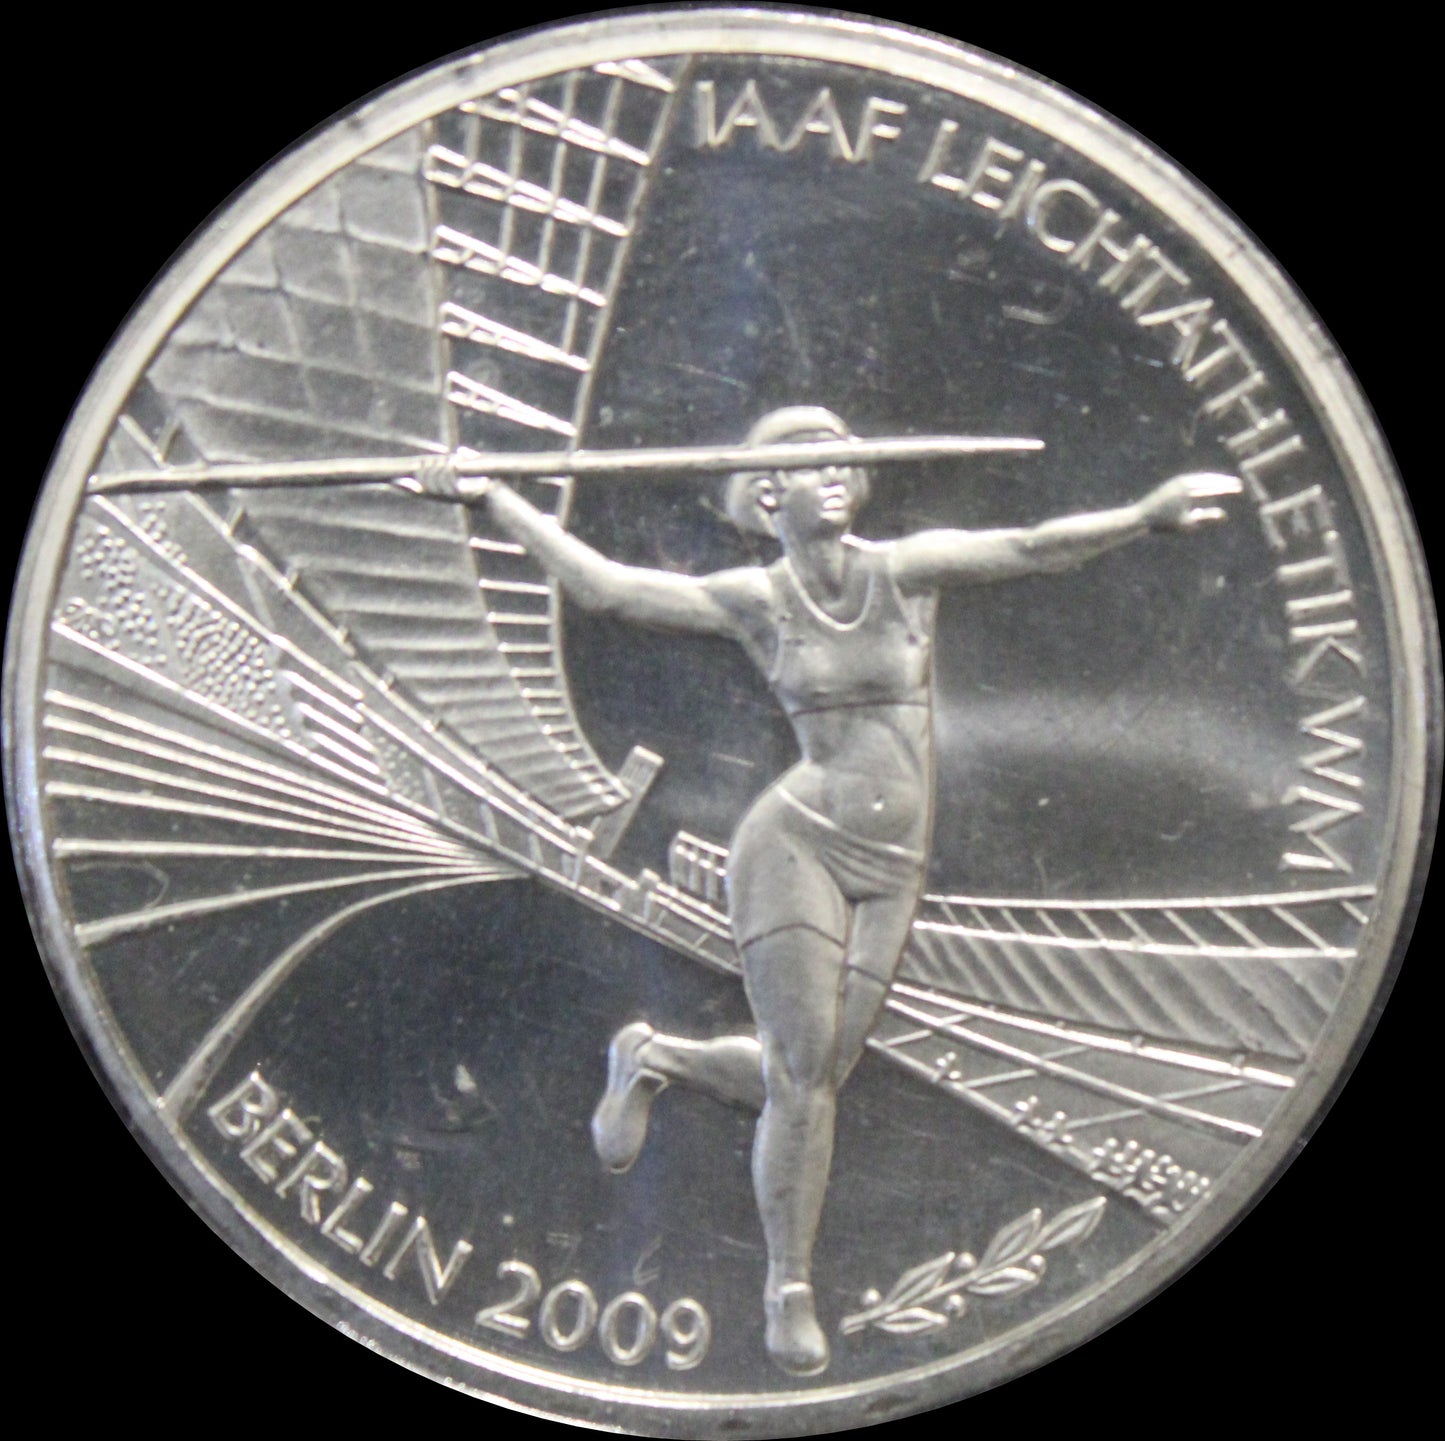 FIS ALPINE SKI WM 2011 GARMISCH-PARTENKIRCHEN, Serie 10 € Silber Gedenkmünzen Deutschland, Stempelglanz, 2010